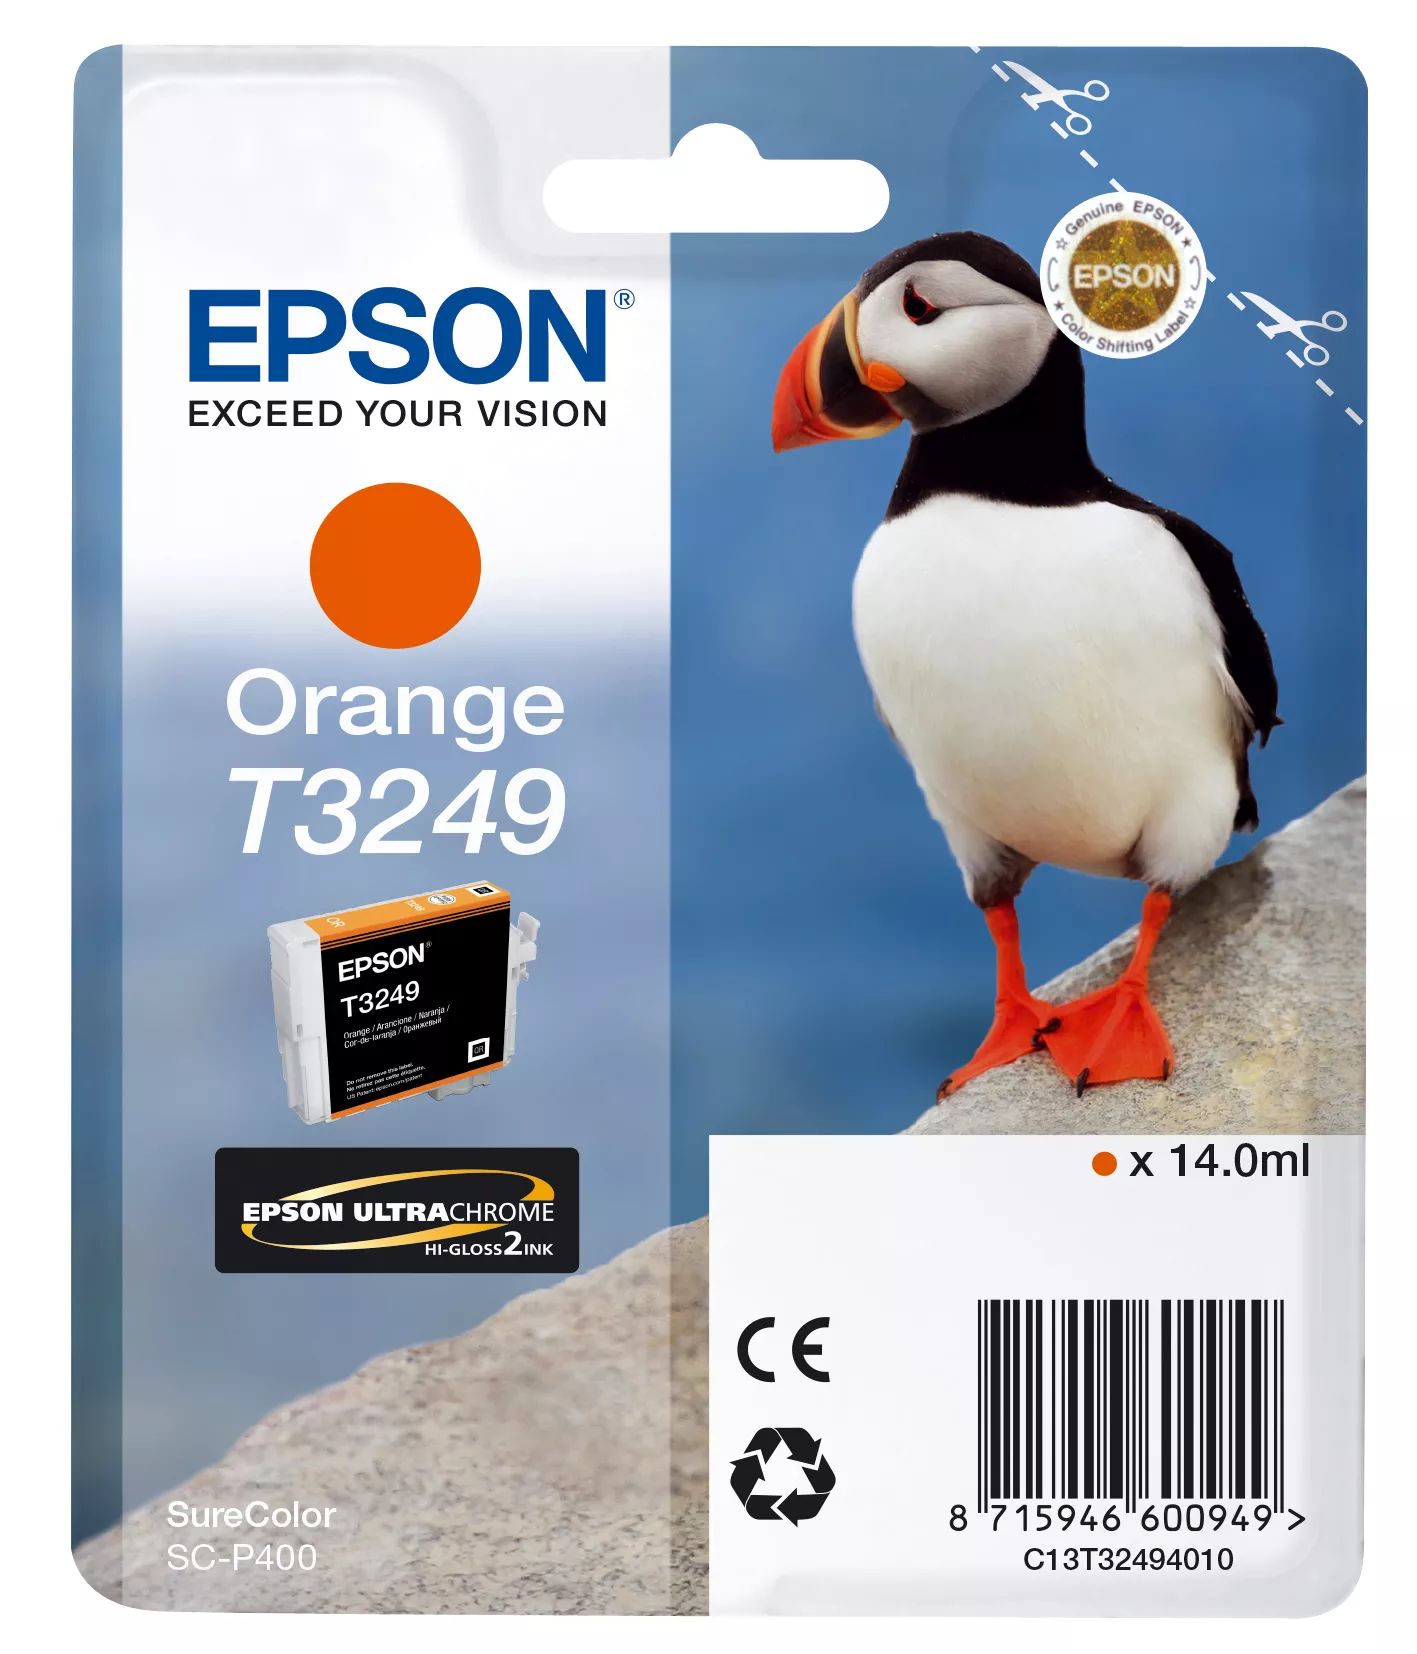 Achat EPSON Cartouche T3249 - Orange 980 pages au meilleur prix